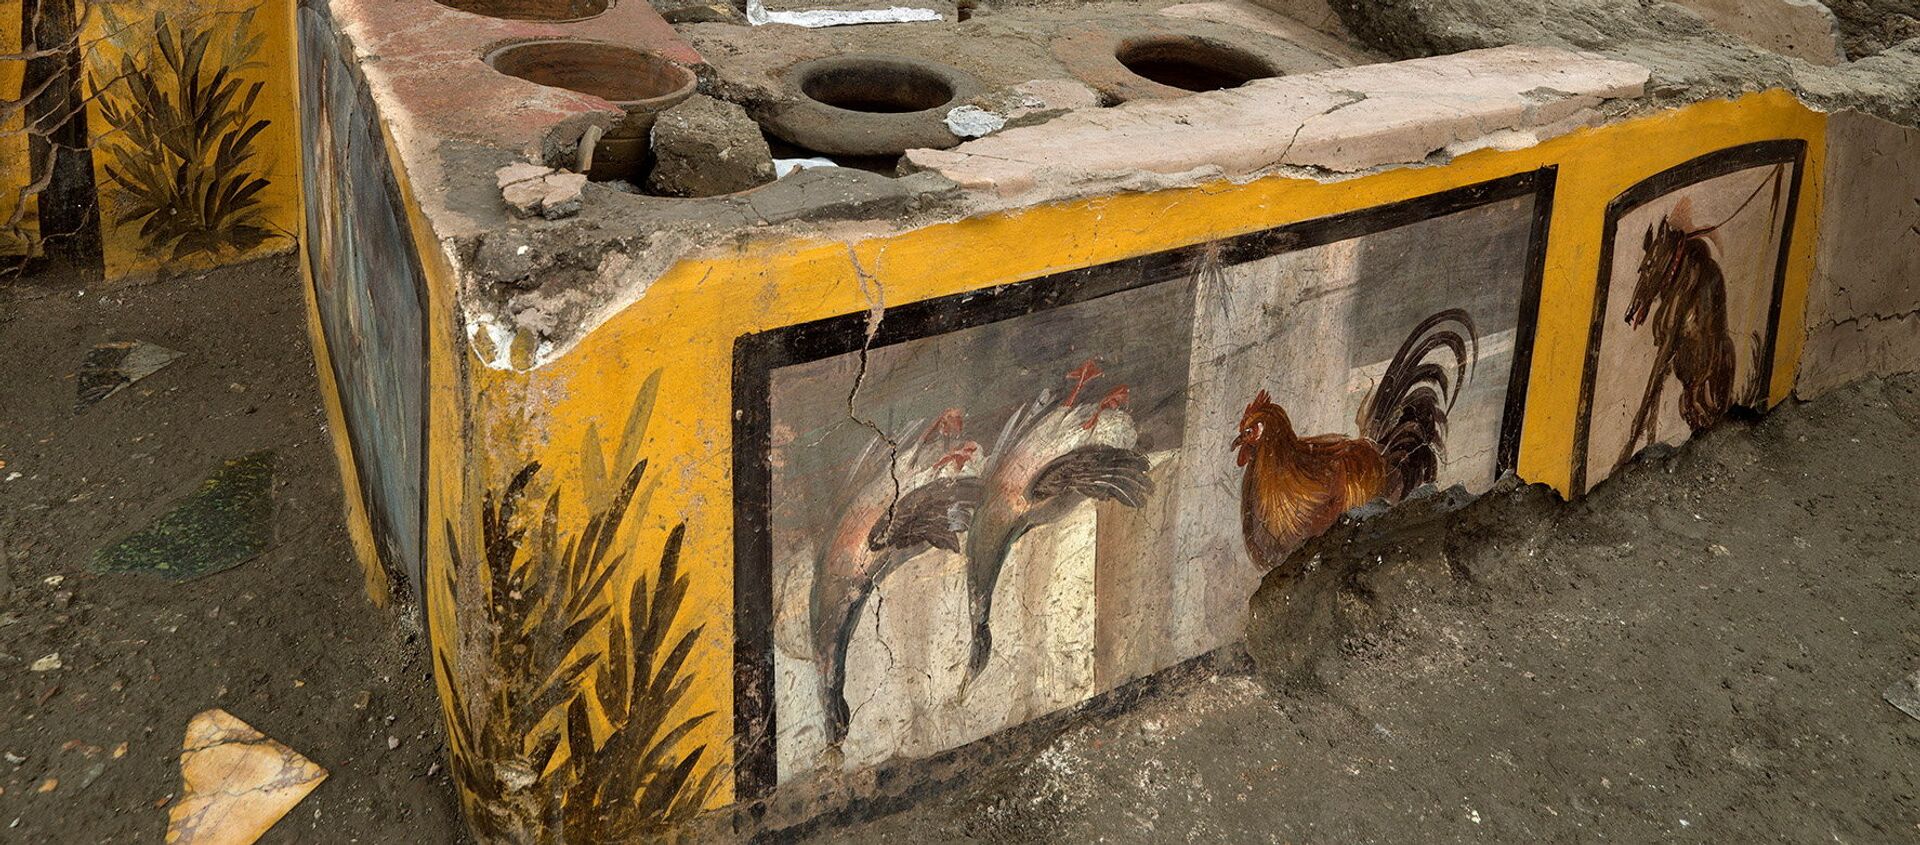 Pompeii'de ortaya çıkarılan fast food restoranın atasında, parlak renkli fresklerle süslenmiş dairesel bir tezgah bulunuyor. - Sputnik Türkiye, 1920, 27.12.2020